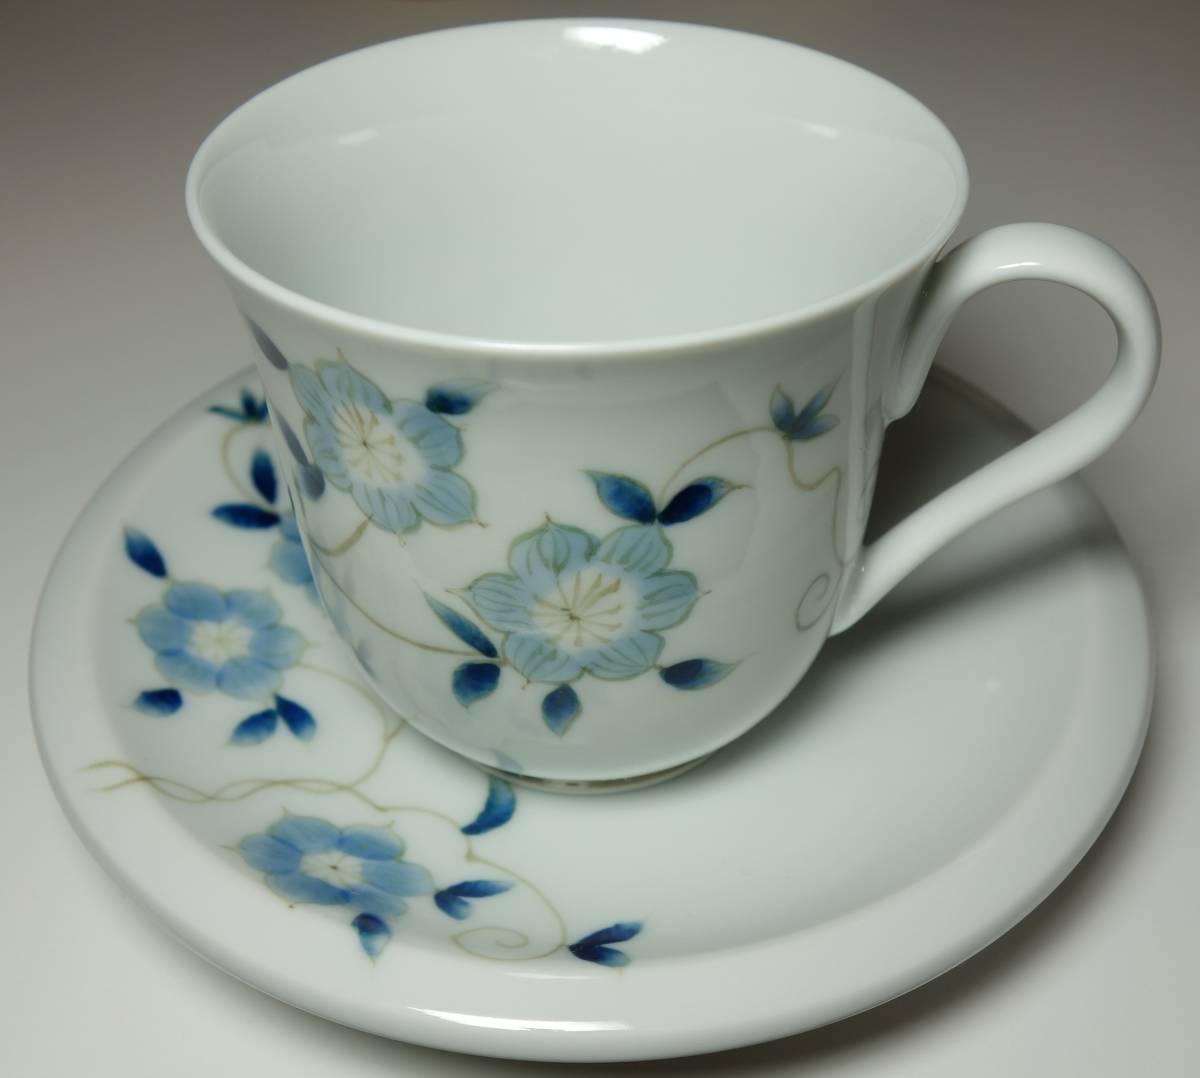 Période Heisei Romance Illustration de fleurs peintes à la main Tasse à café et soucoupe Main rare, céramique japonaise, La céramique en général, porcelaine colorée